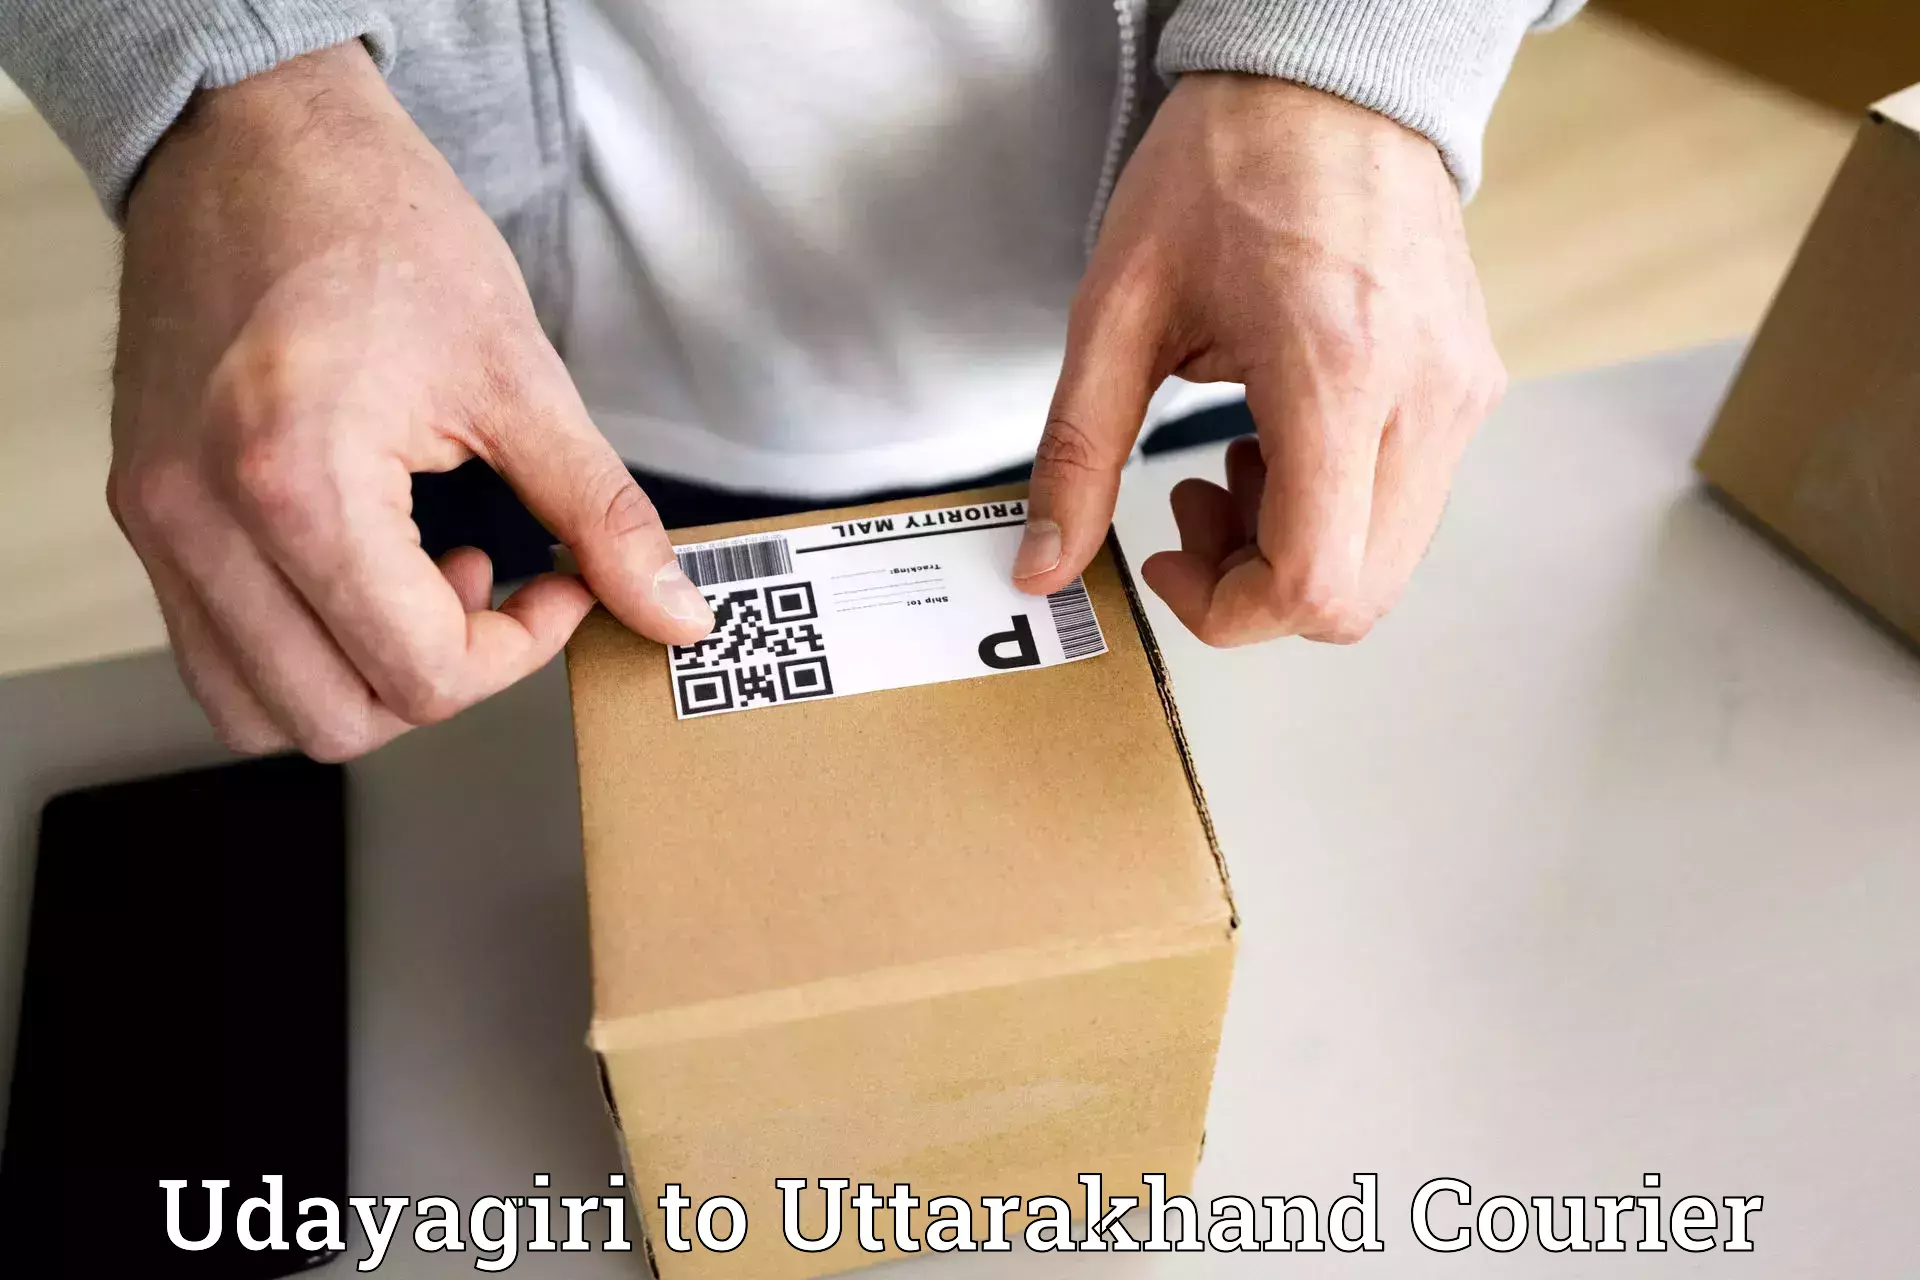 Flexible delivery scheduling Udayagiri to Ranikhet